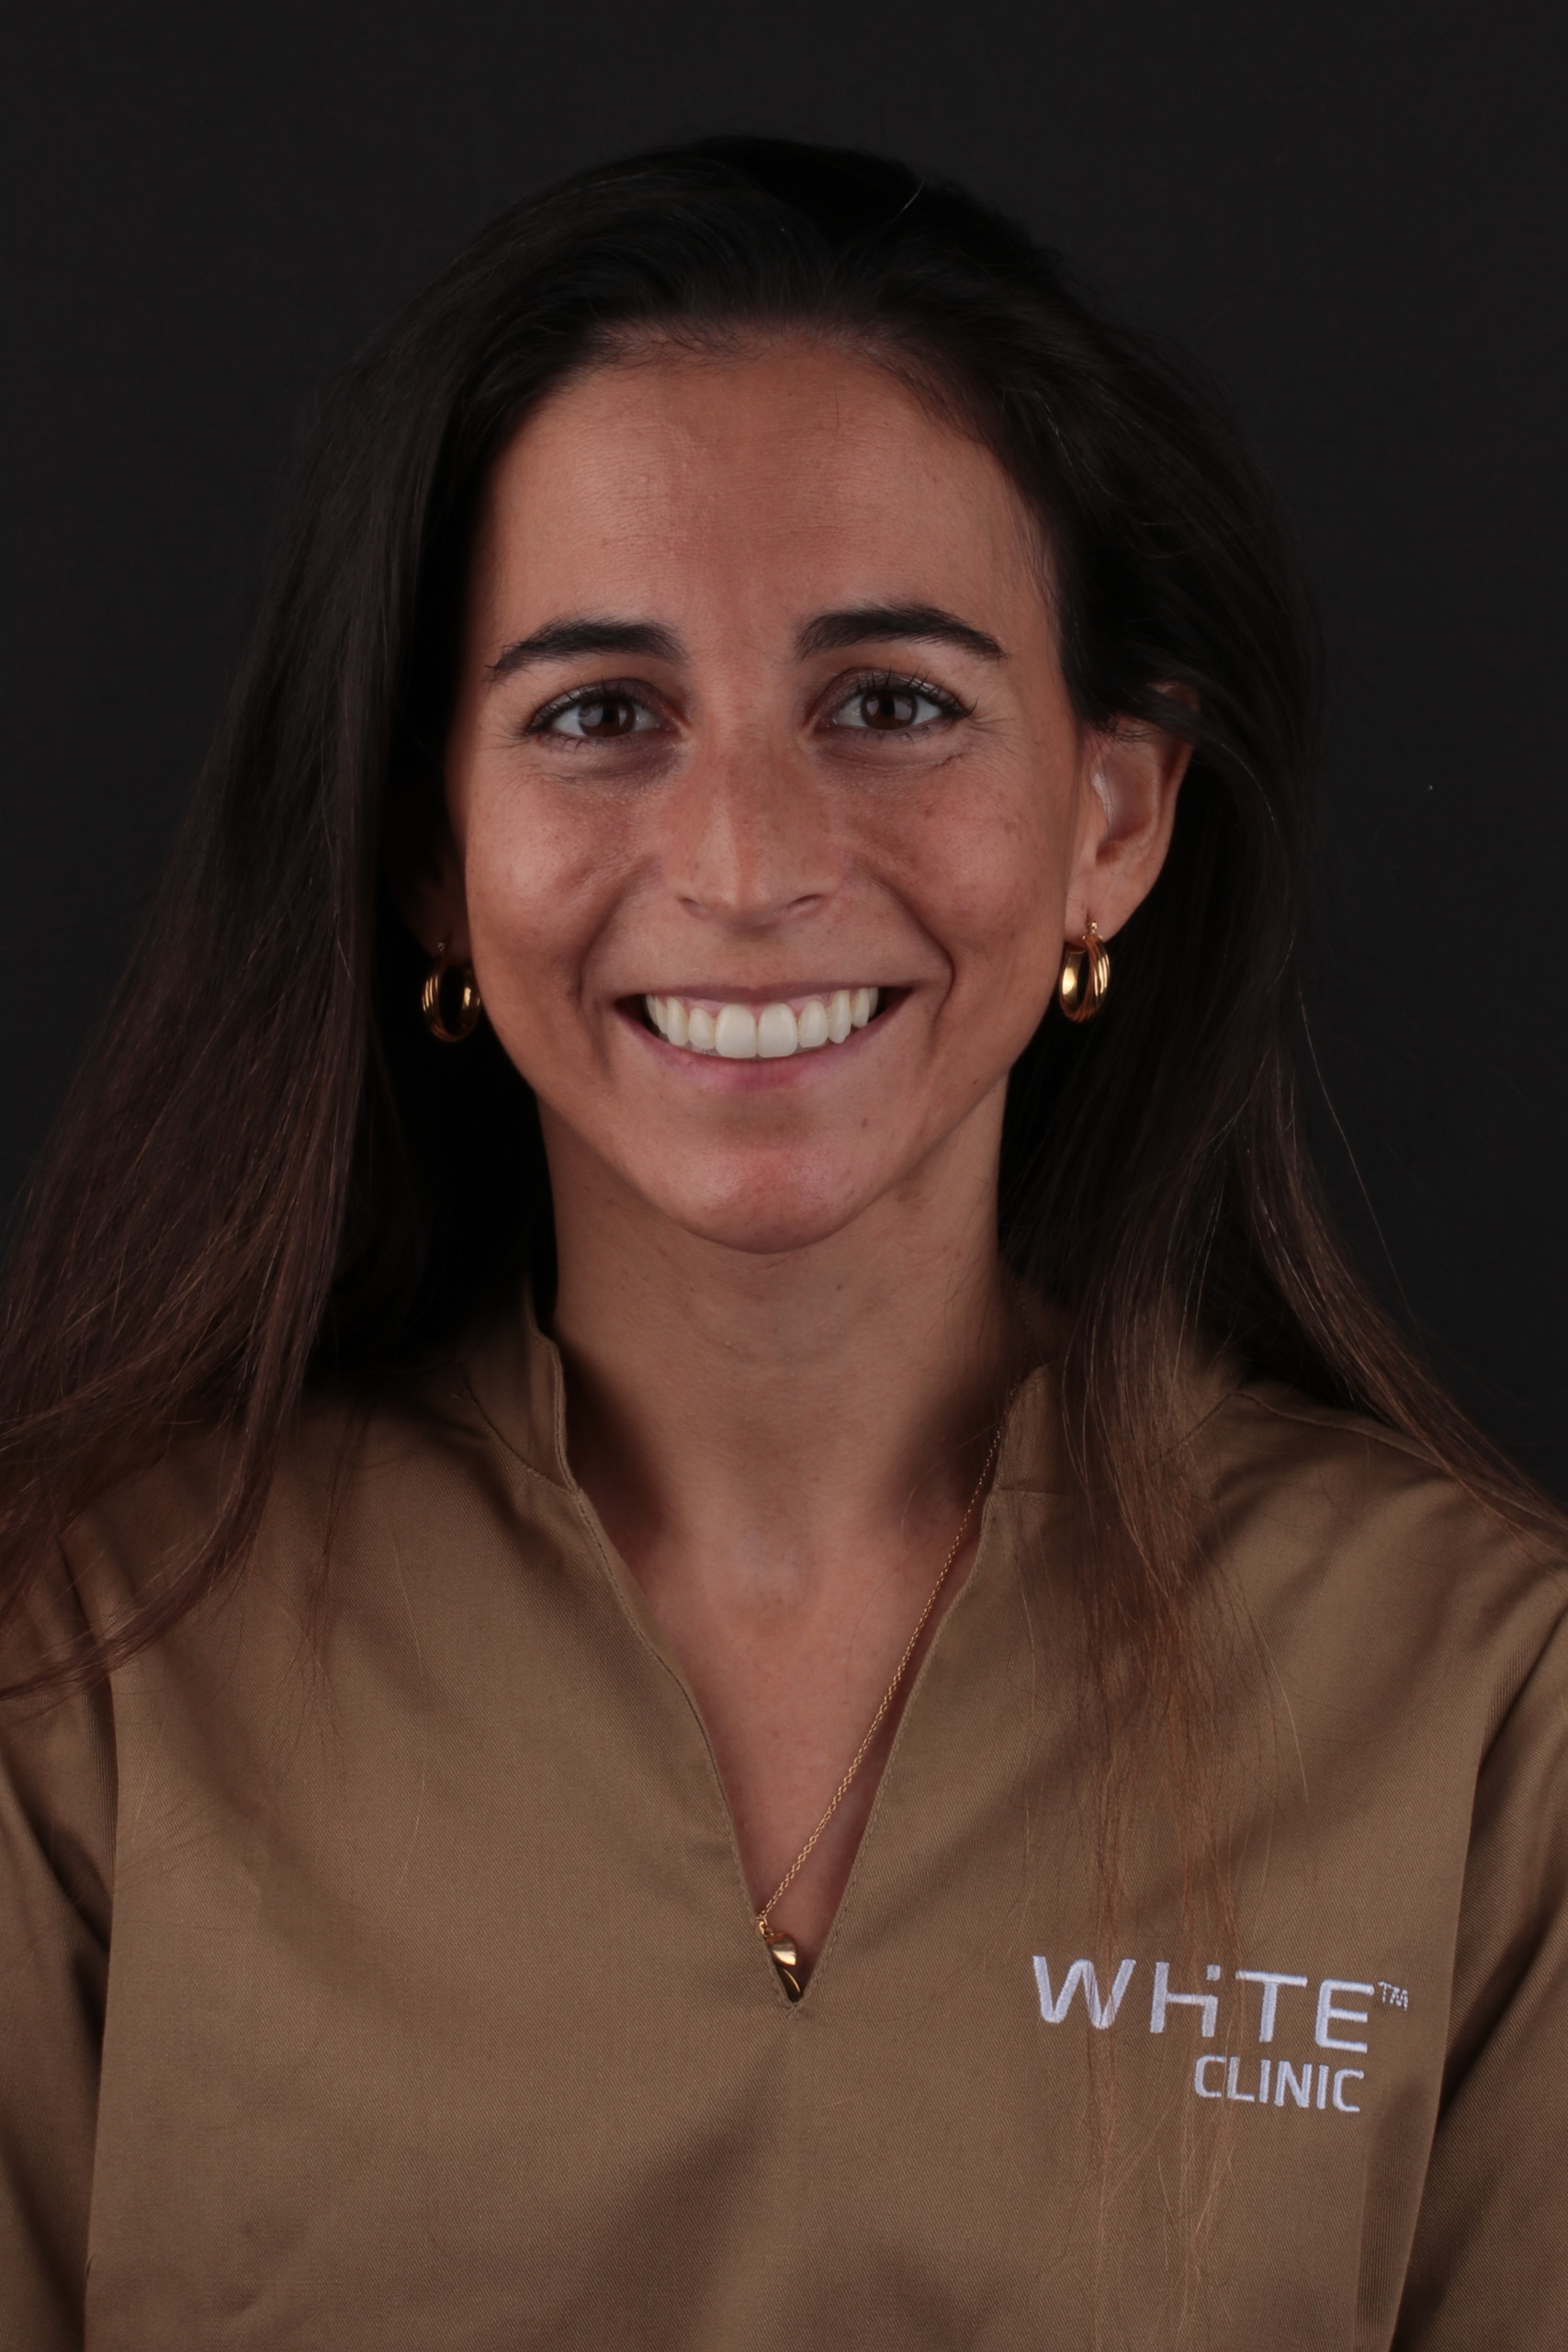 Dra. Maria Verissimo - Doctor of Dental Medicine